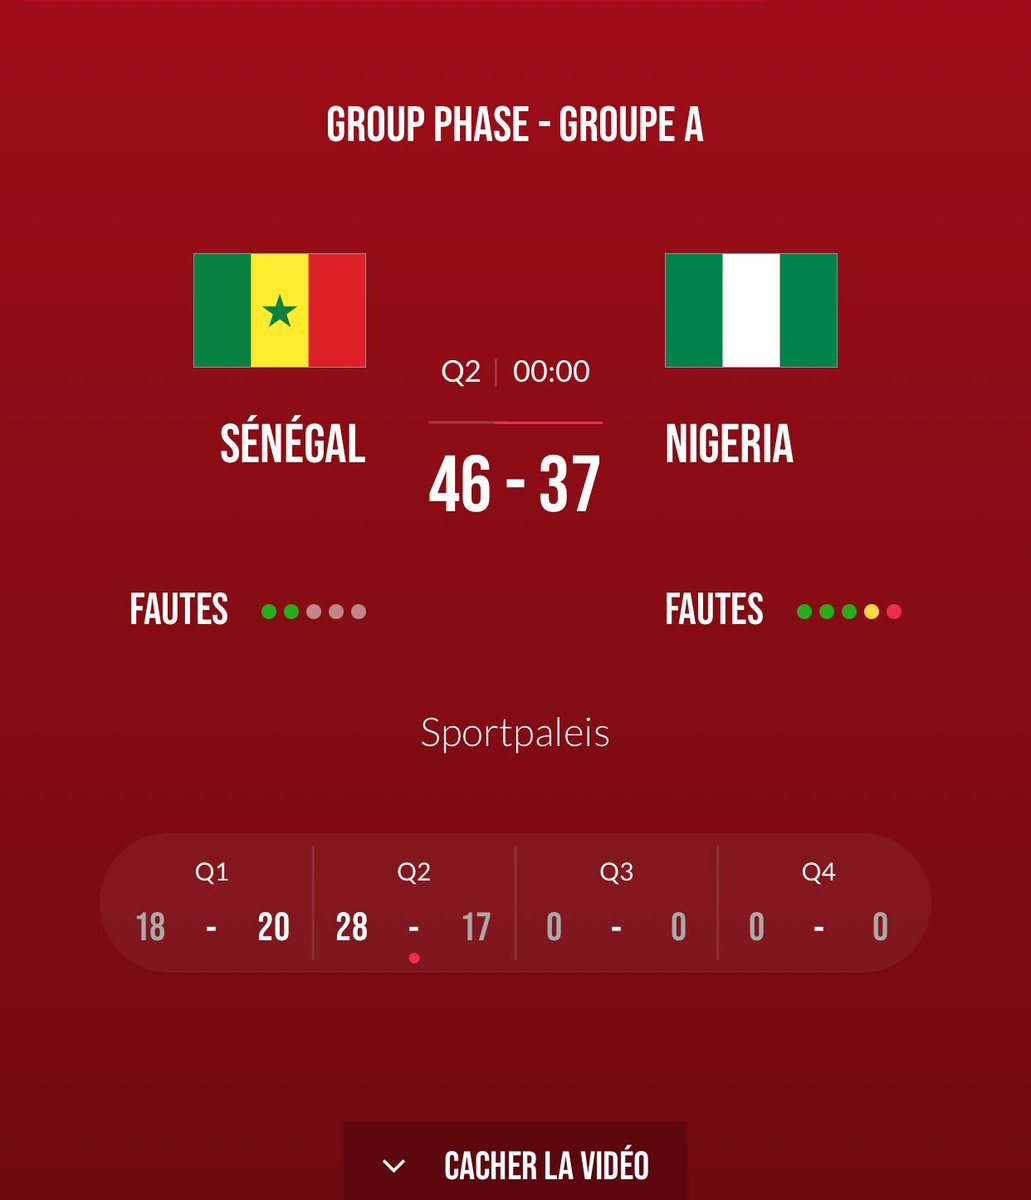 TOURNOI QUALIFICATIF AUX JEUX OLYMPIQUES ANVERS 2024 MI-TEMPS SÉNÉGAL 🇸🇳 4️⃣6️⃣- 3️⃣7️⃣ 🇳🇬 NIGERIA #FIBAOQT #SENEGAL #BASKETBALL